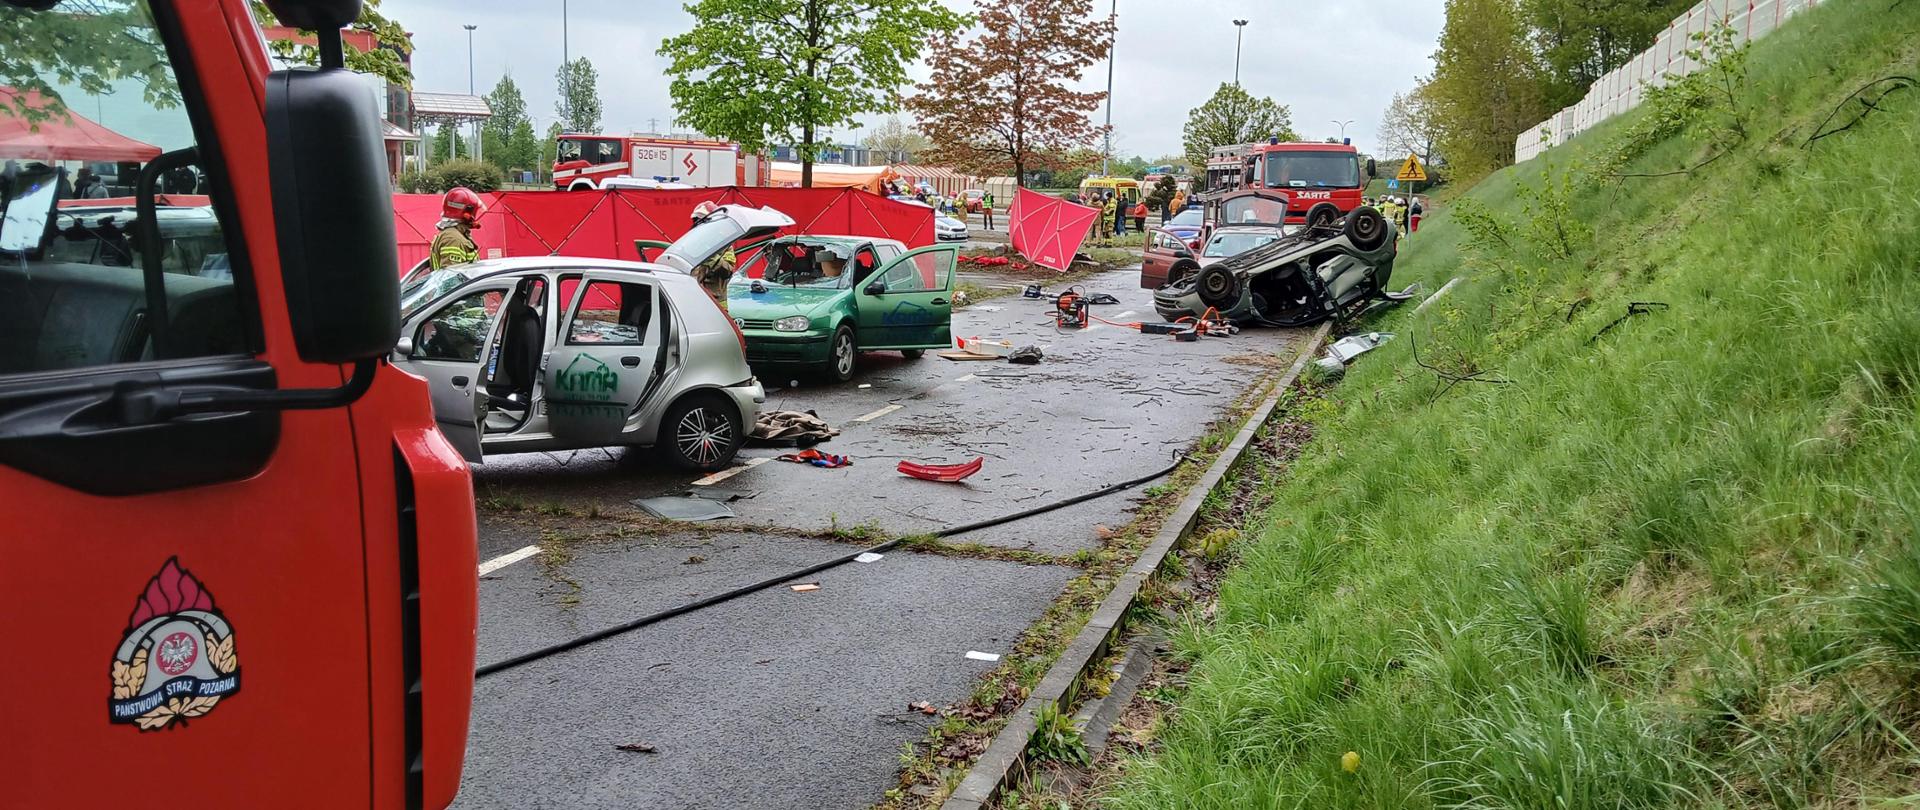 na drodze rozbite samochody osobowe z otwartymi drzwiami w tle strażacy i samochody strażackie podczas udzielania pomocy poszkodowanym w wypadku masowym. 